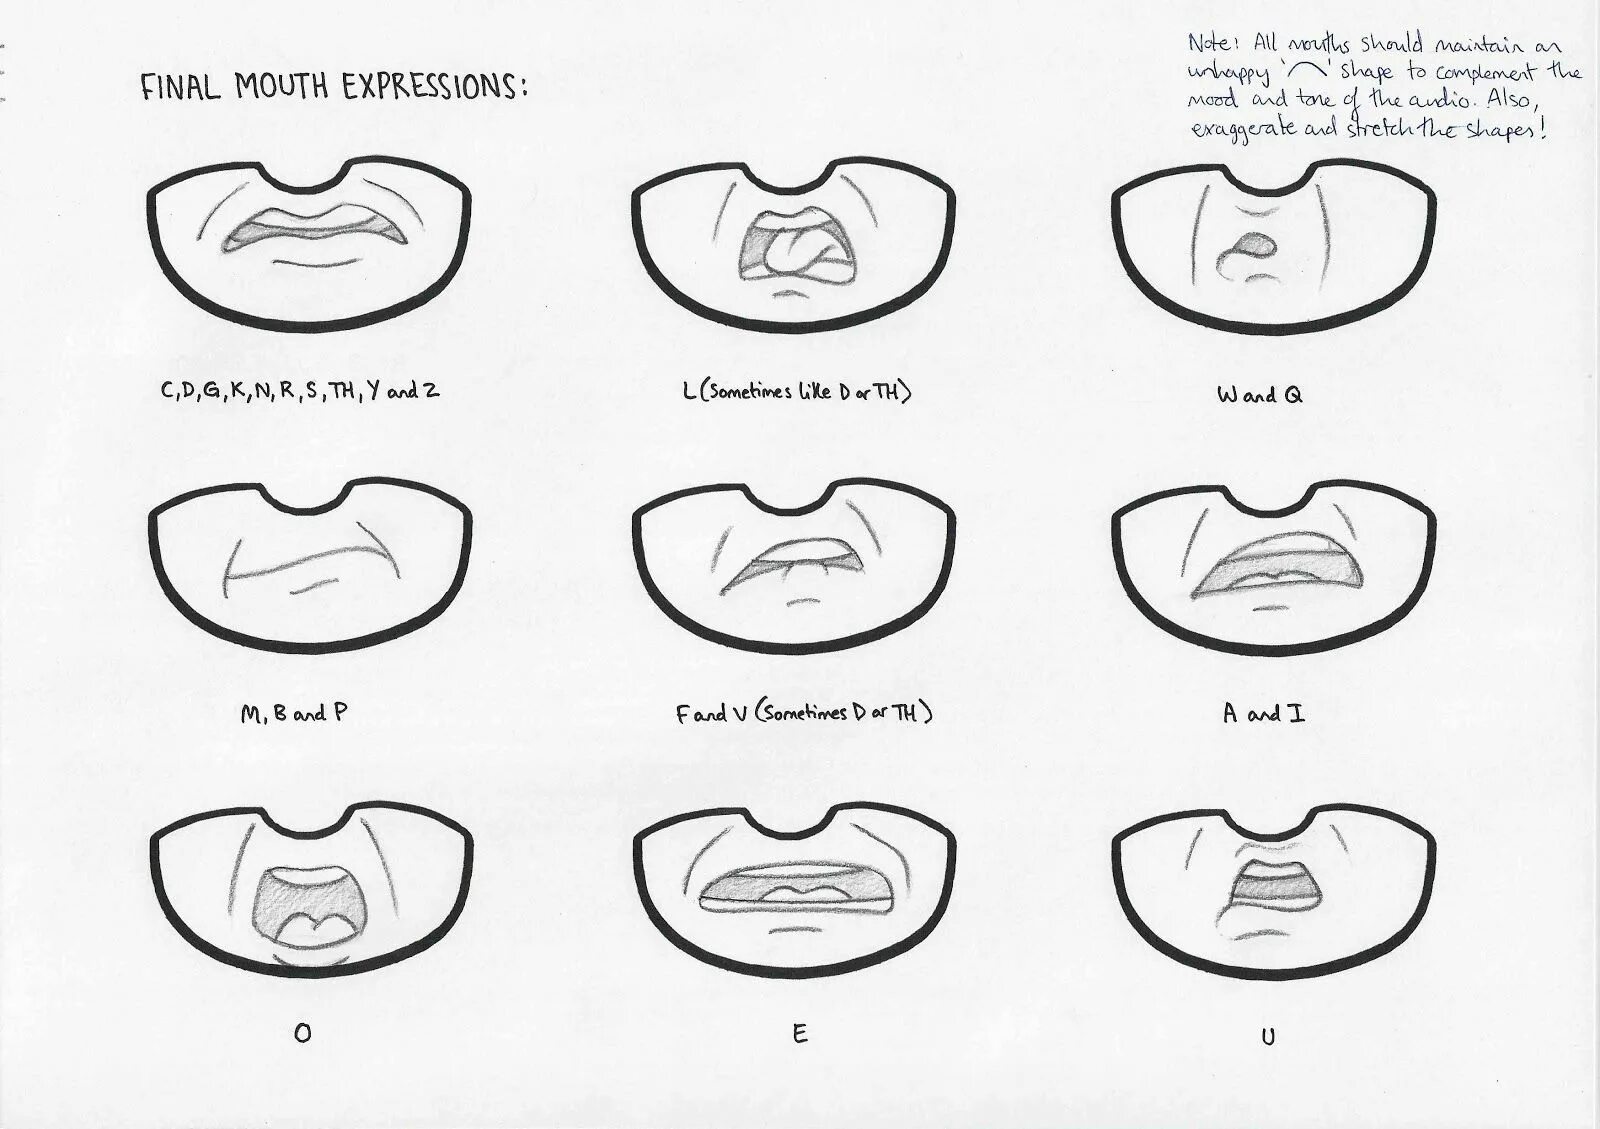 Какую ы рот. Артикуляция рта для анимации. Липсинг губ референс. Положение рта для анимации. Позиции рта для анимации.